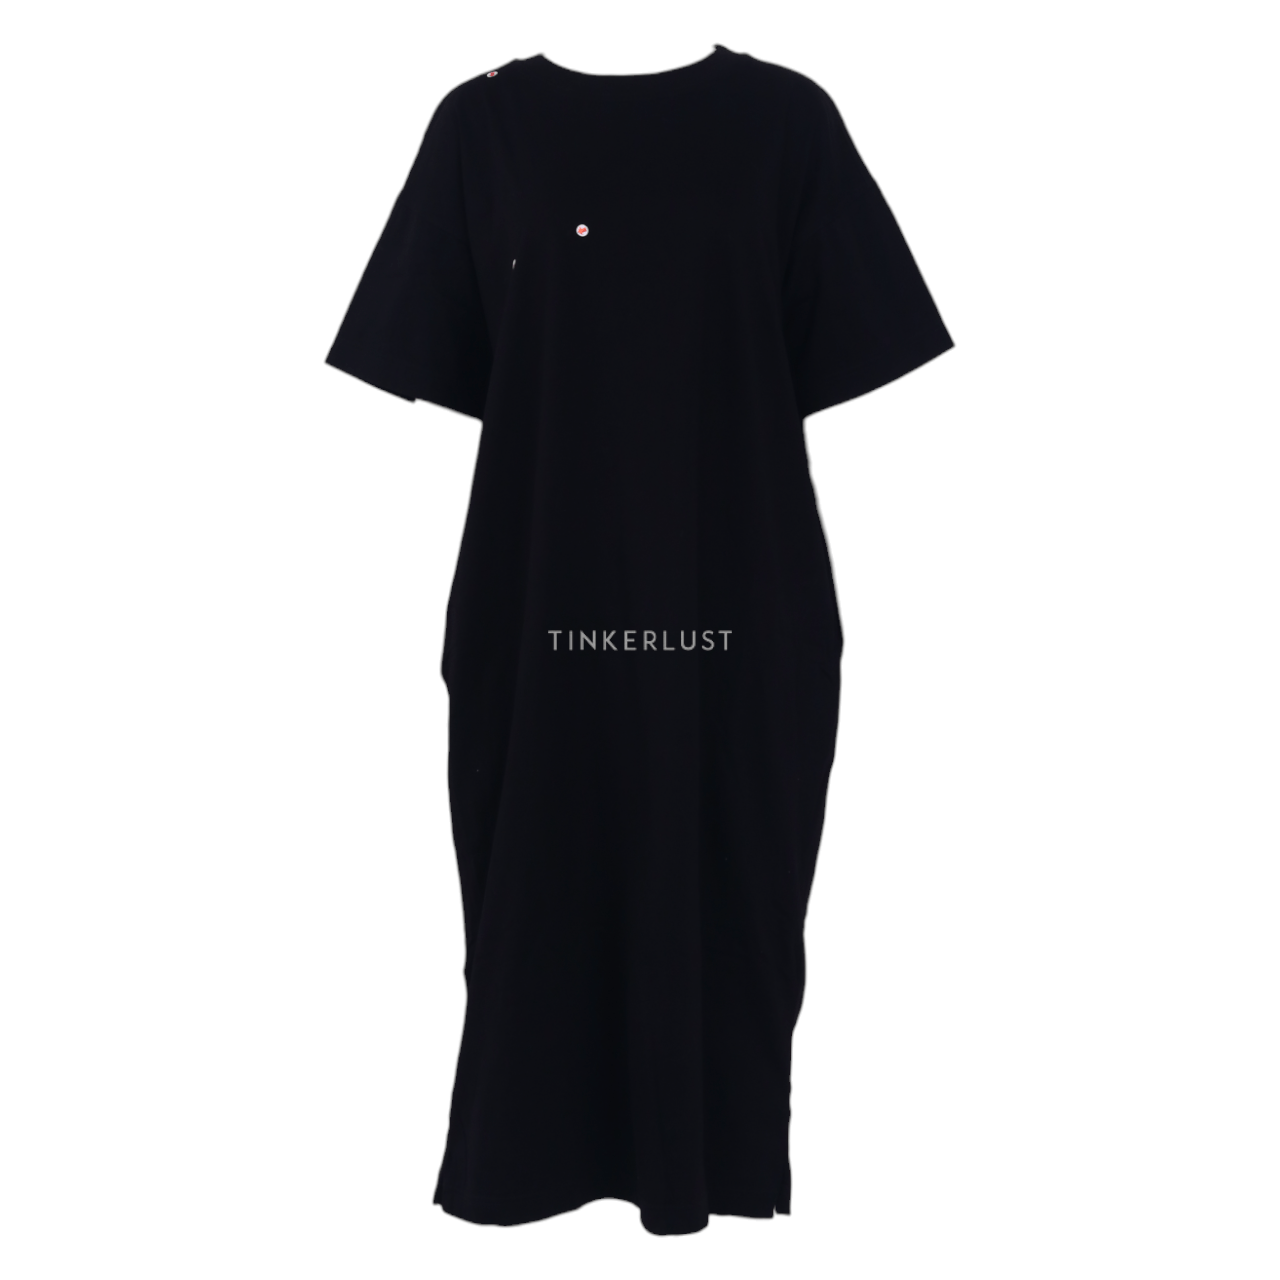 UNIQLO Black Midi Dress